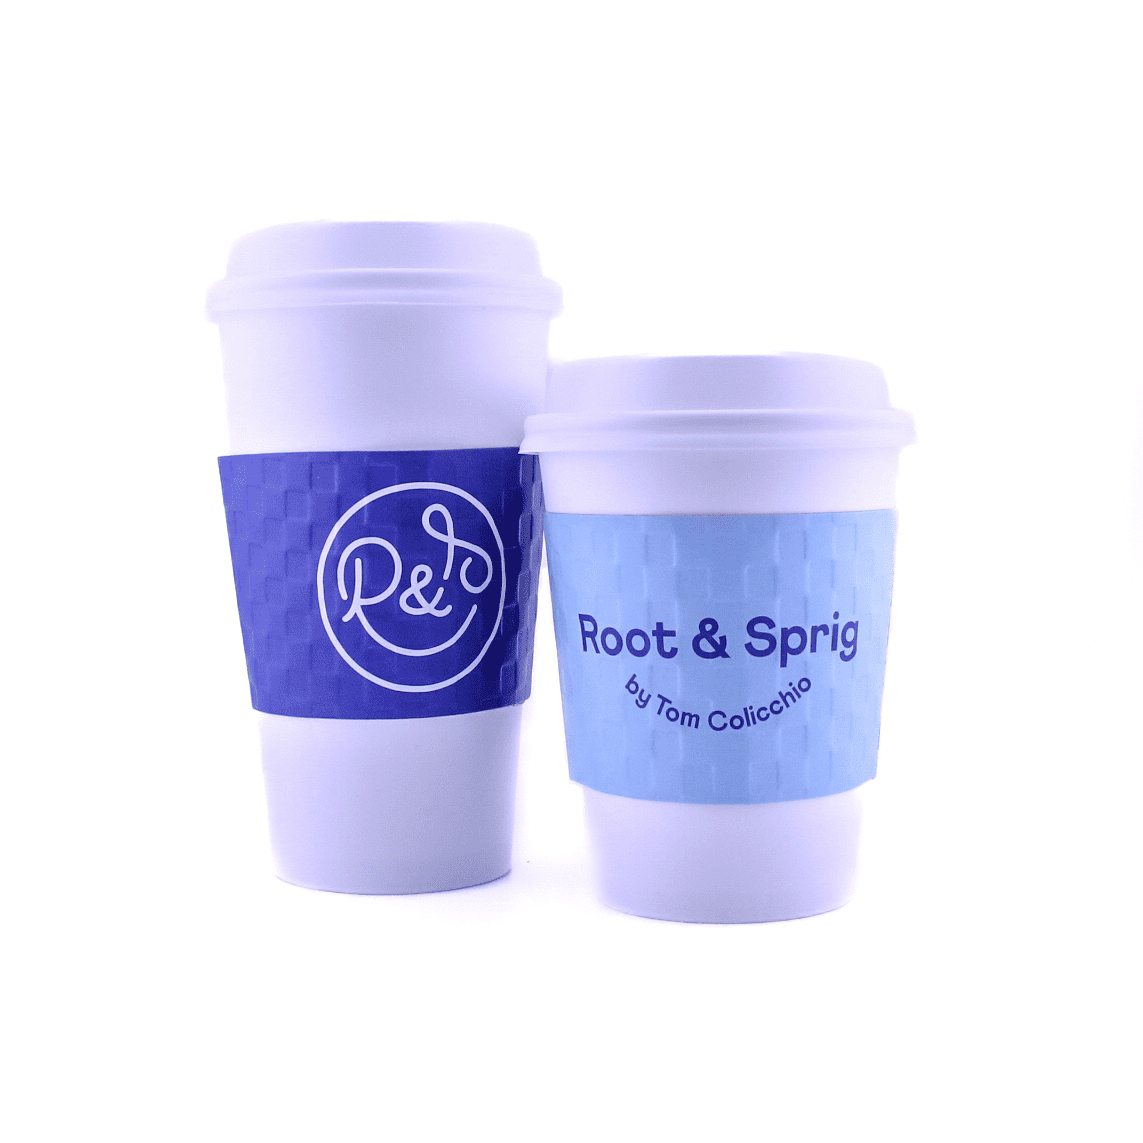 Root & Sprig- Hot Tea, Coffee, Americano, Cappuccino, Macchiato, Espresso, Cafe Au Lait, Latte and more